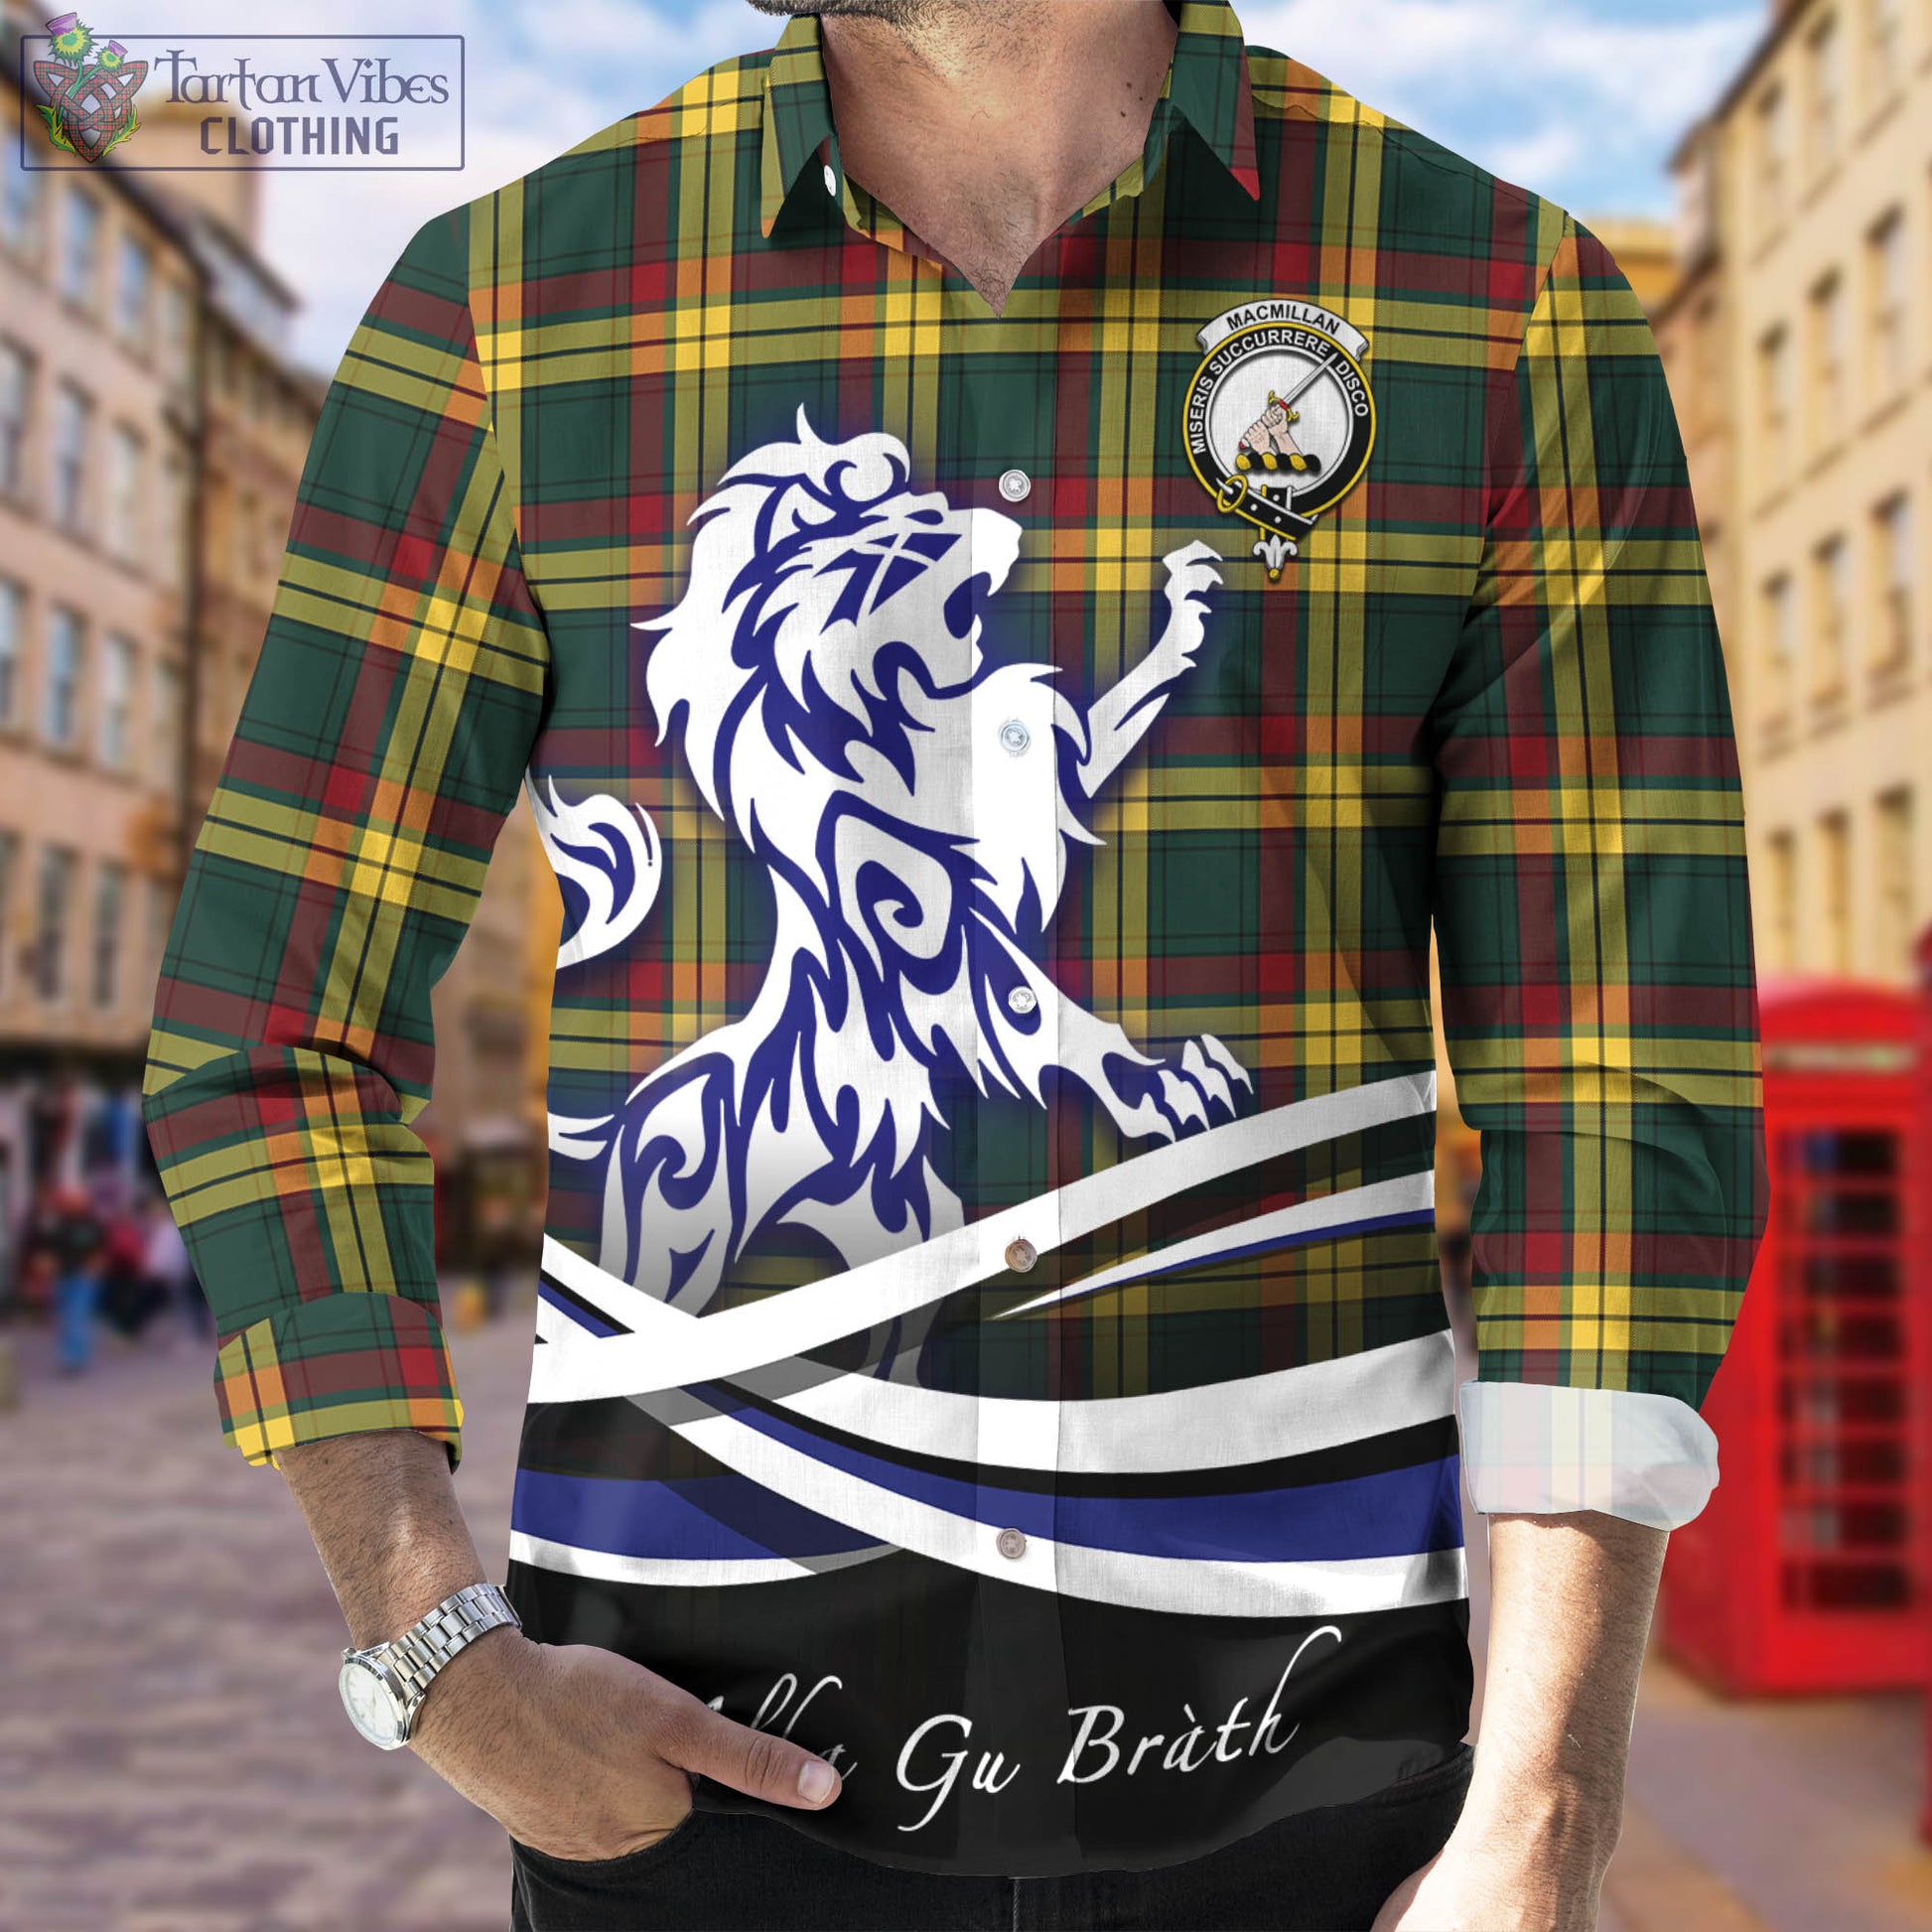 macmillan-old-modern-tartan-long-sleeve-button-up-shirt-with-alba-gu-brath-regal-lion-emblem